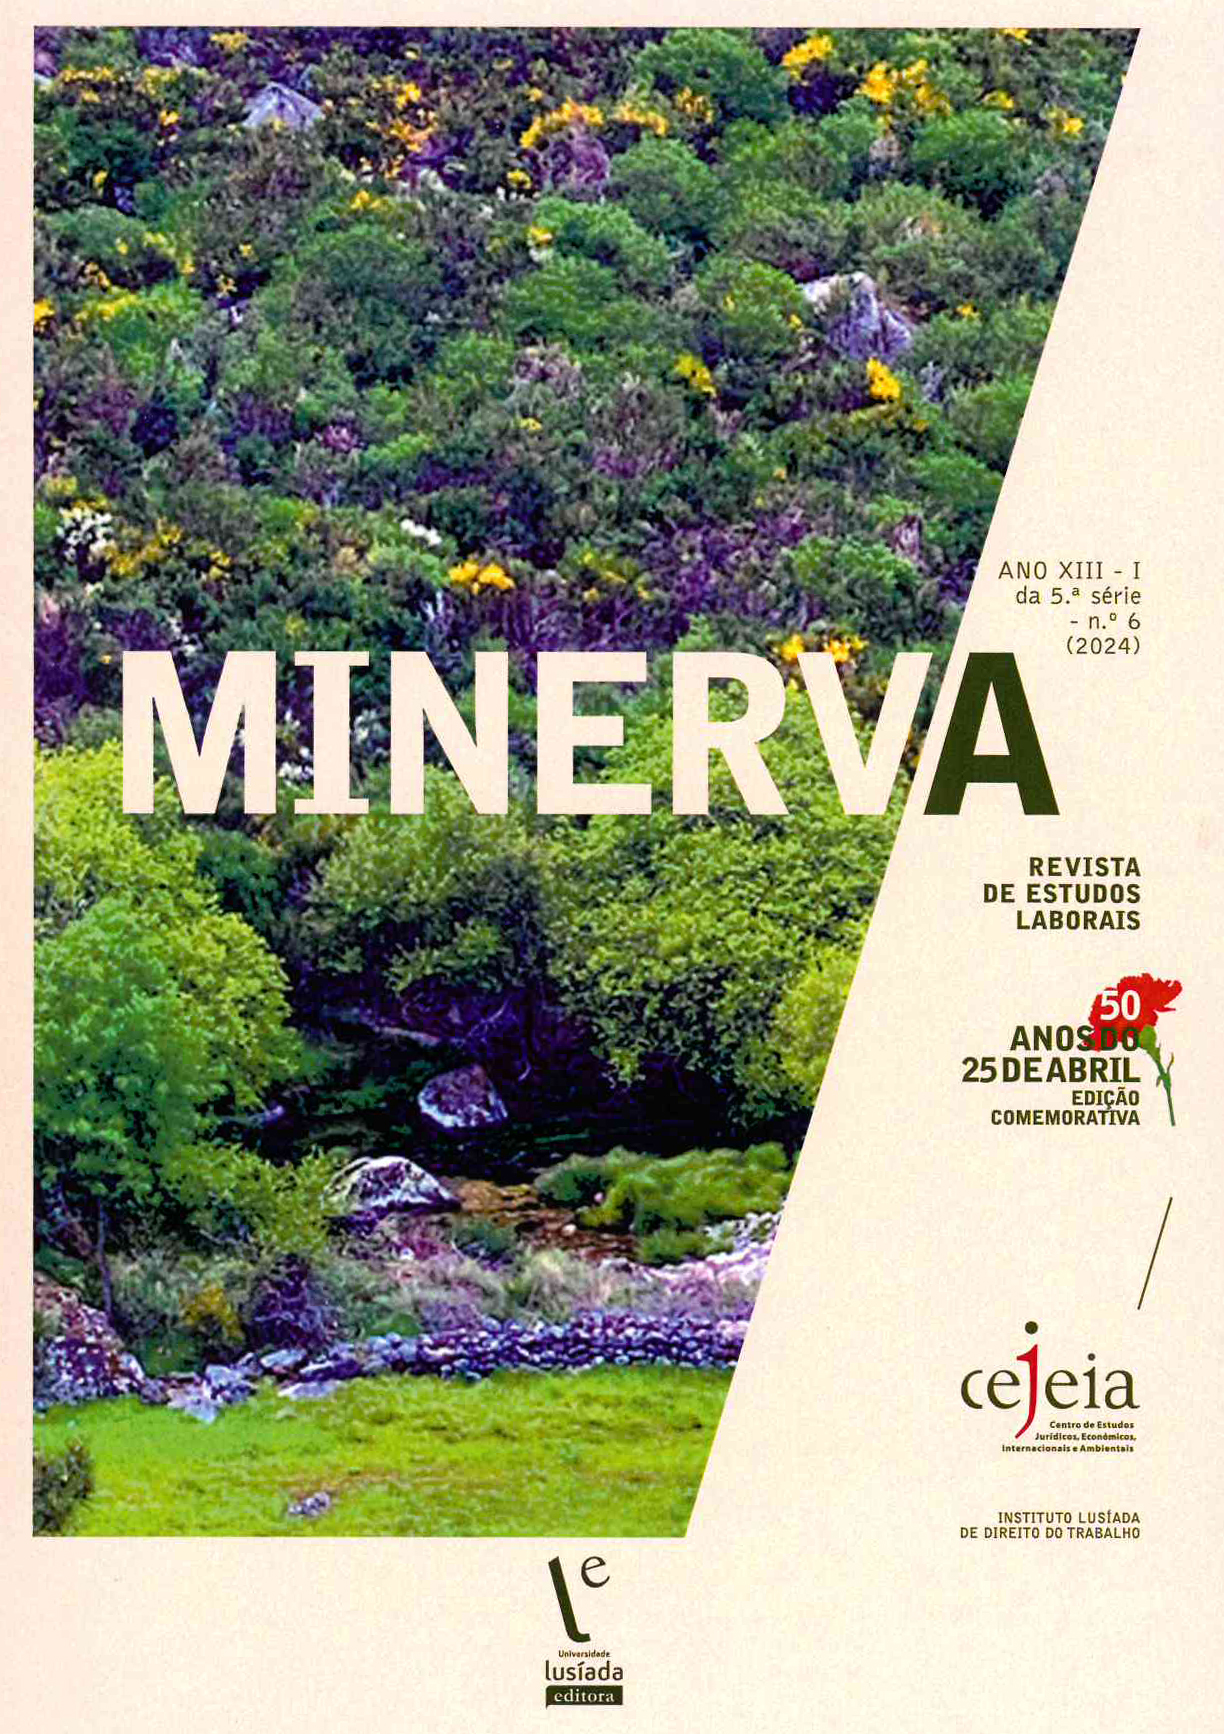 Minerva – Revista de Estudos Laborais, n. 6 (2024) - Universidade Lusíada Editora